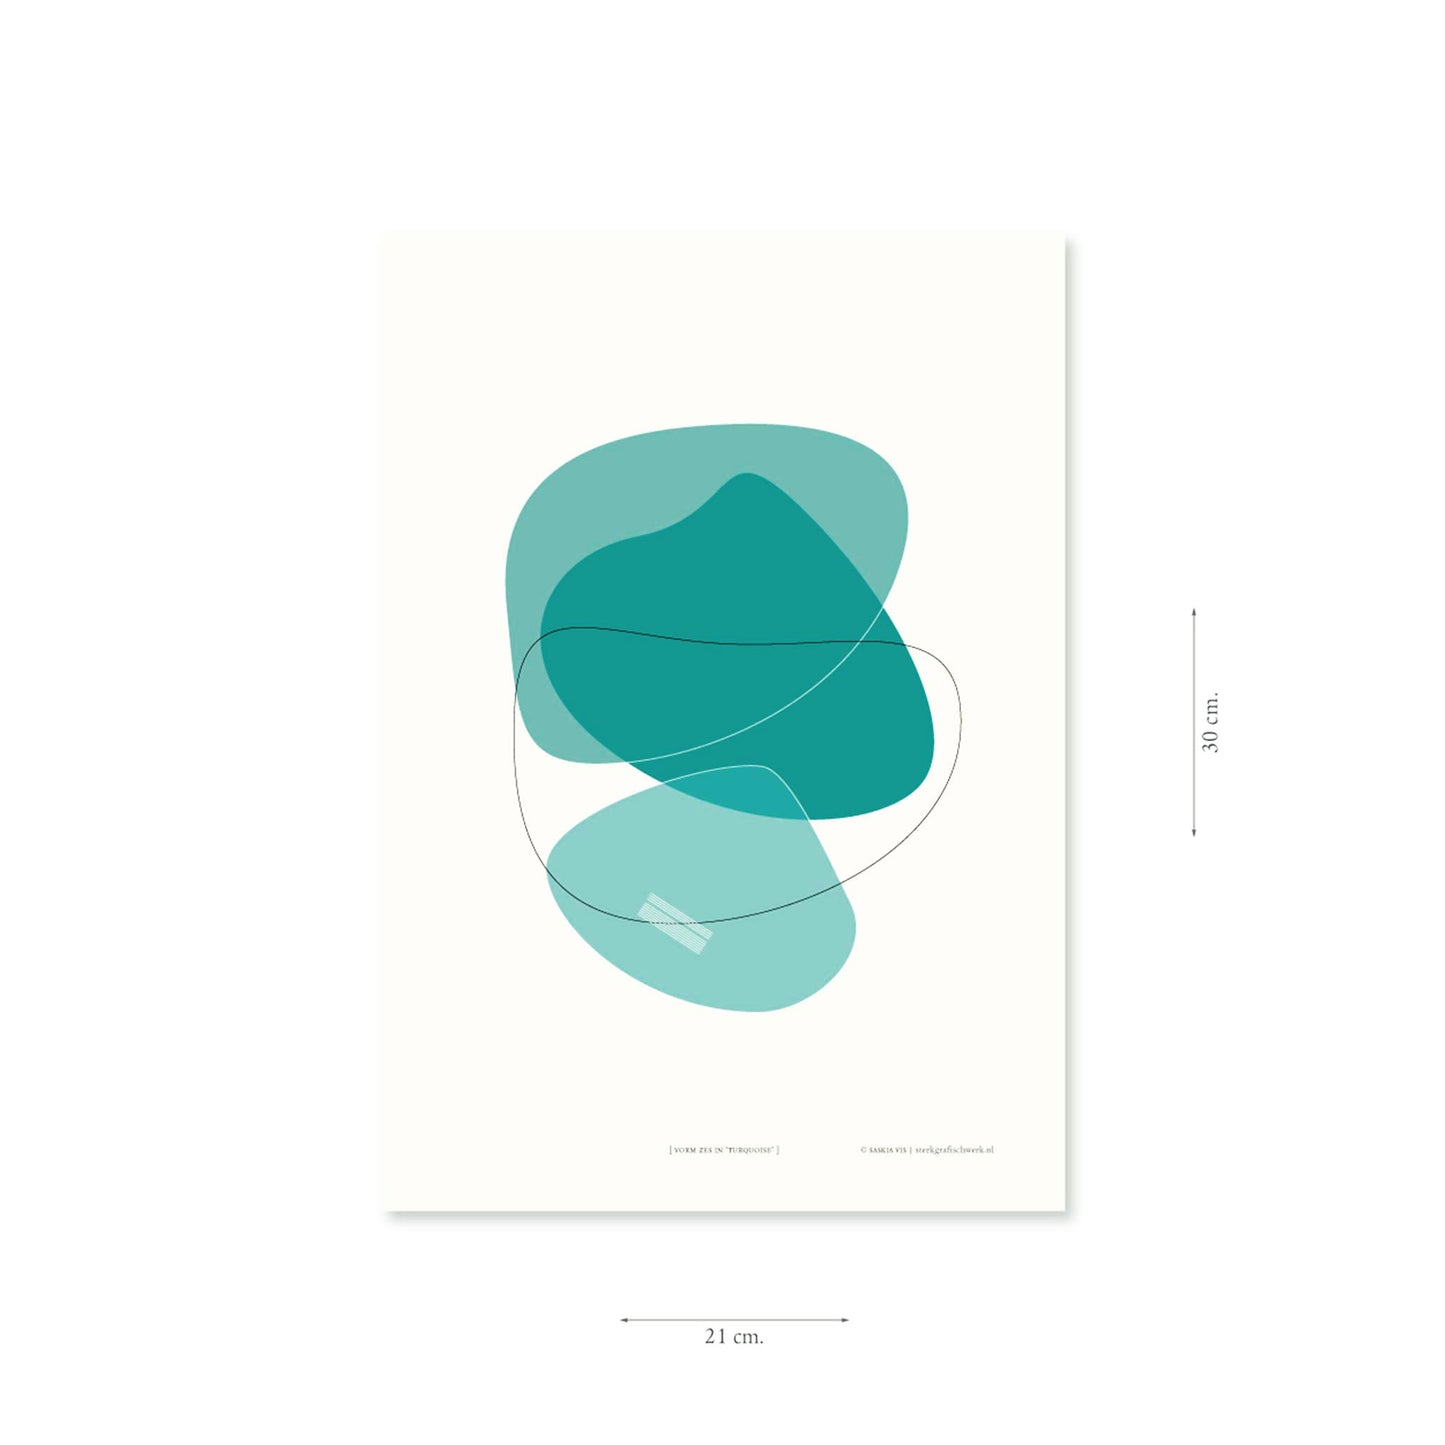 Productafbeelding, poster "vorm zes in turquoise", met aanduiding van het formaat erop weergegeven 21 x 30 cm